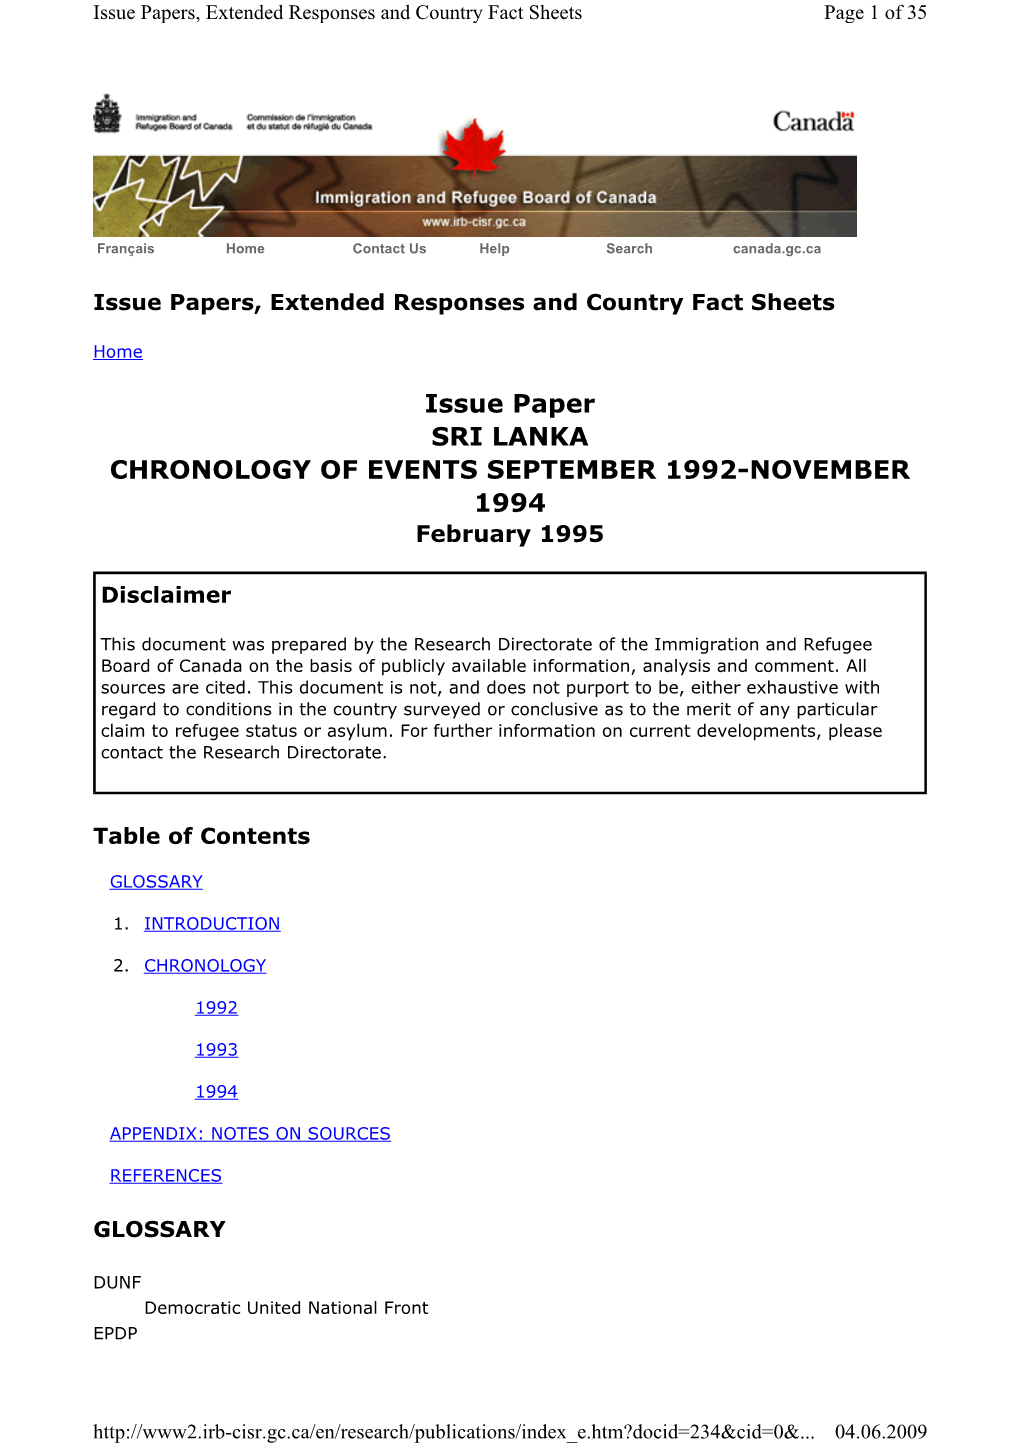 Issue Paper SRI LANKA CHRONOLOGY of EVENTS SEPTEMBER 1992-NOVEMBER 1994 February 1995